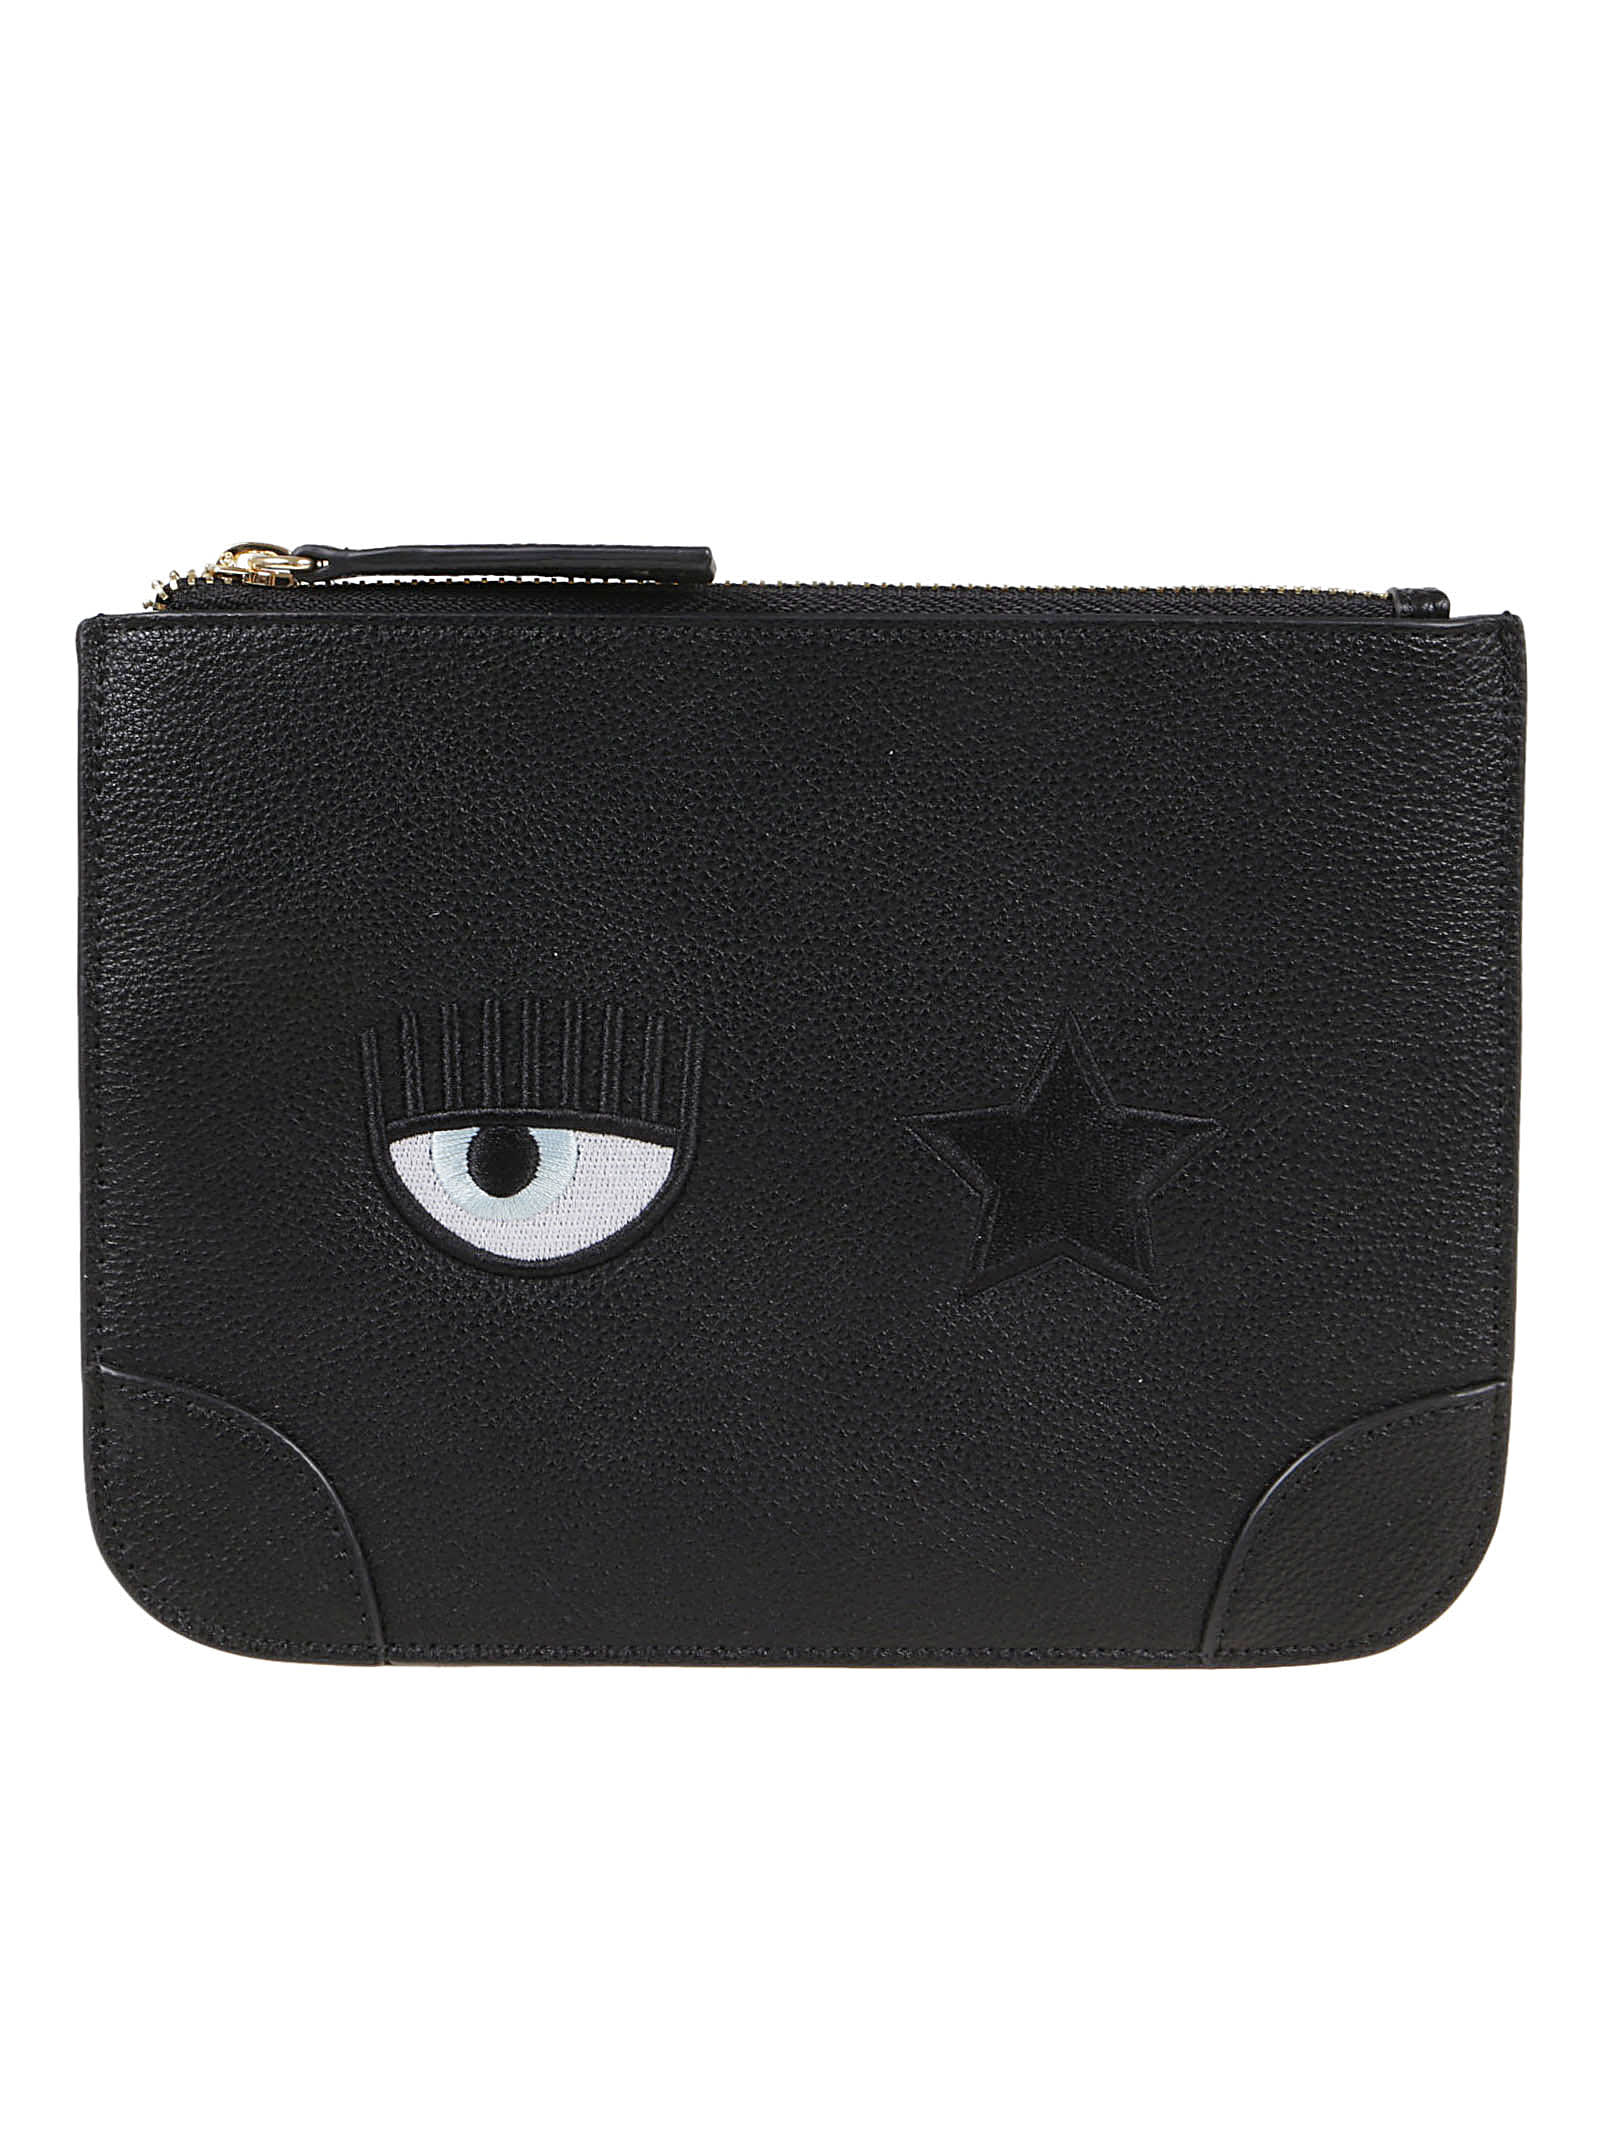 Chiara Ferragni Eye Star Logo, Sketch 08 Small Leather Goods